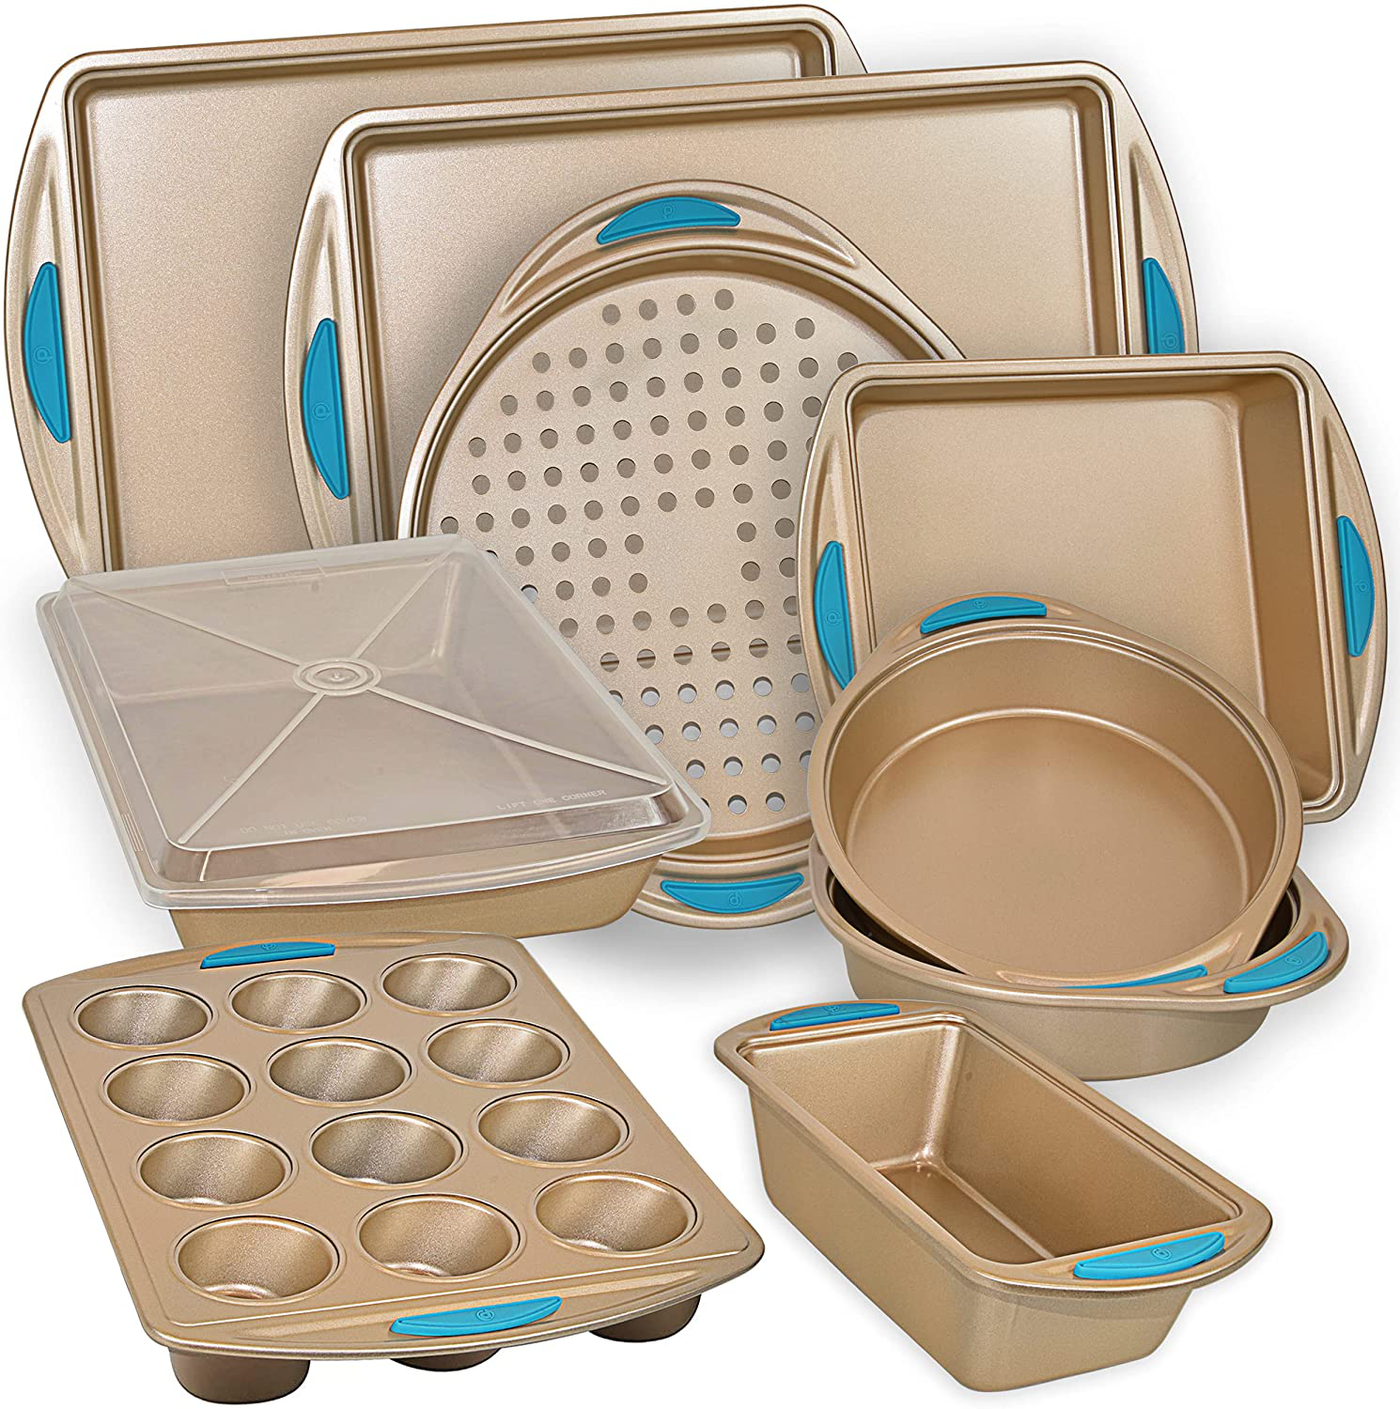 Nonstick Bakeware Set with Baking Pans, Cookie Sheet Baking Sheets, Bread Pan, Cake Pans, Muffin Pan